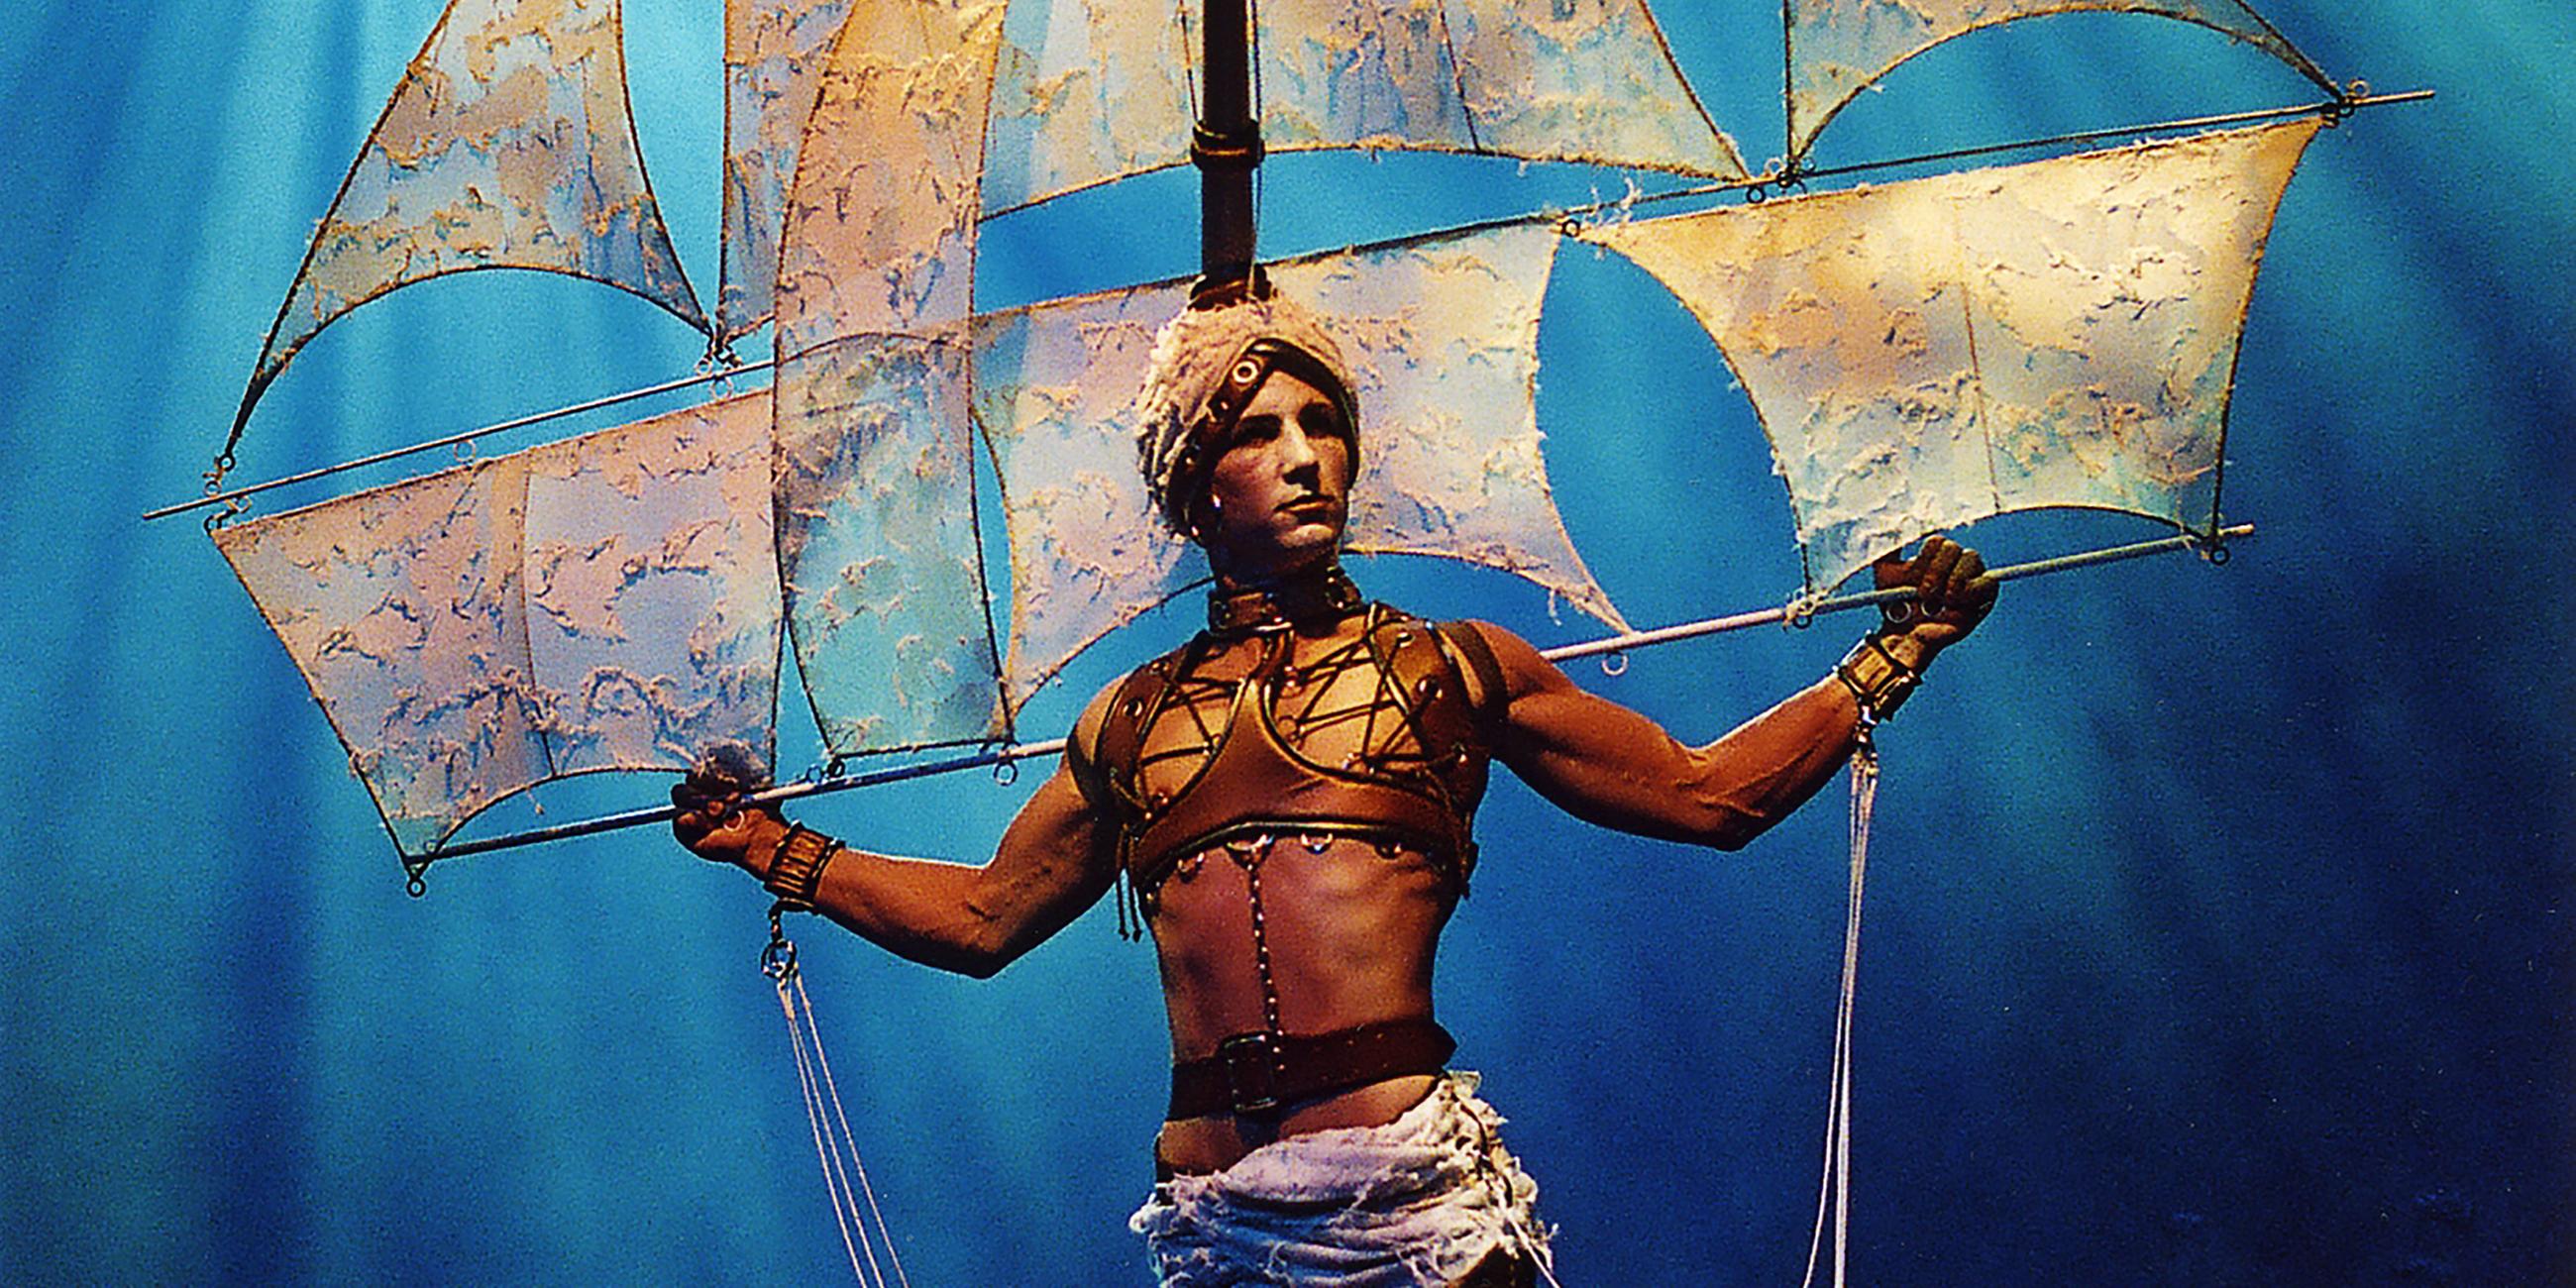 Tänzer im Bild "Somnium" in der Produktion "Wunderbar, die 2002. Nacht" 2002 